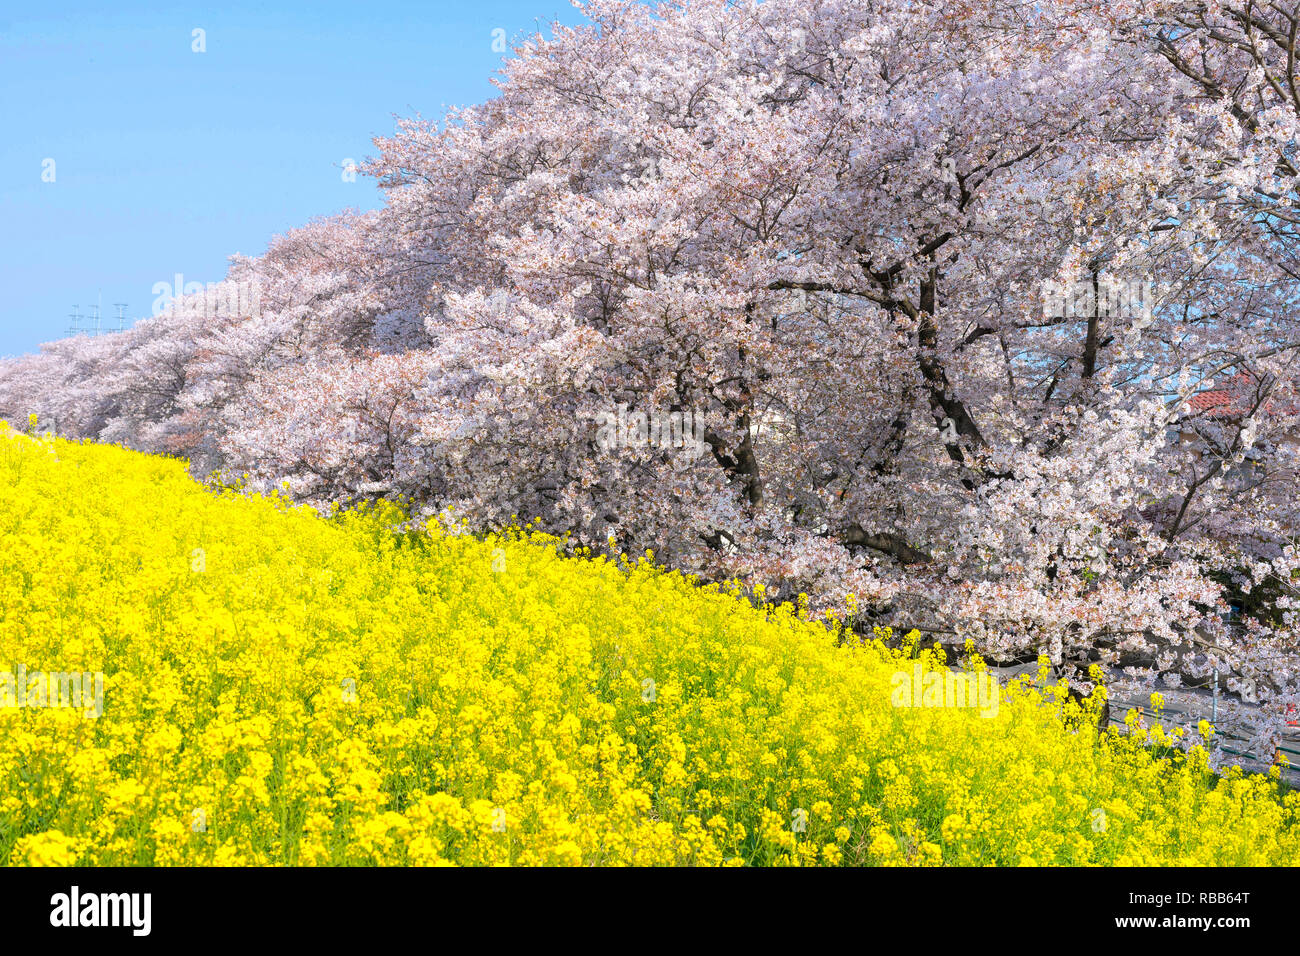 Cherry blossoms and Rapeseed blooms at Kumagaya Arakawa Ryokuchi Park in Saitama,Japan. Stock Photo